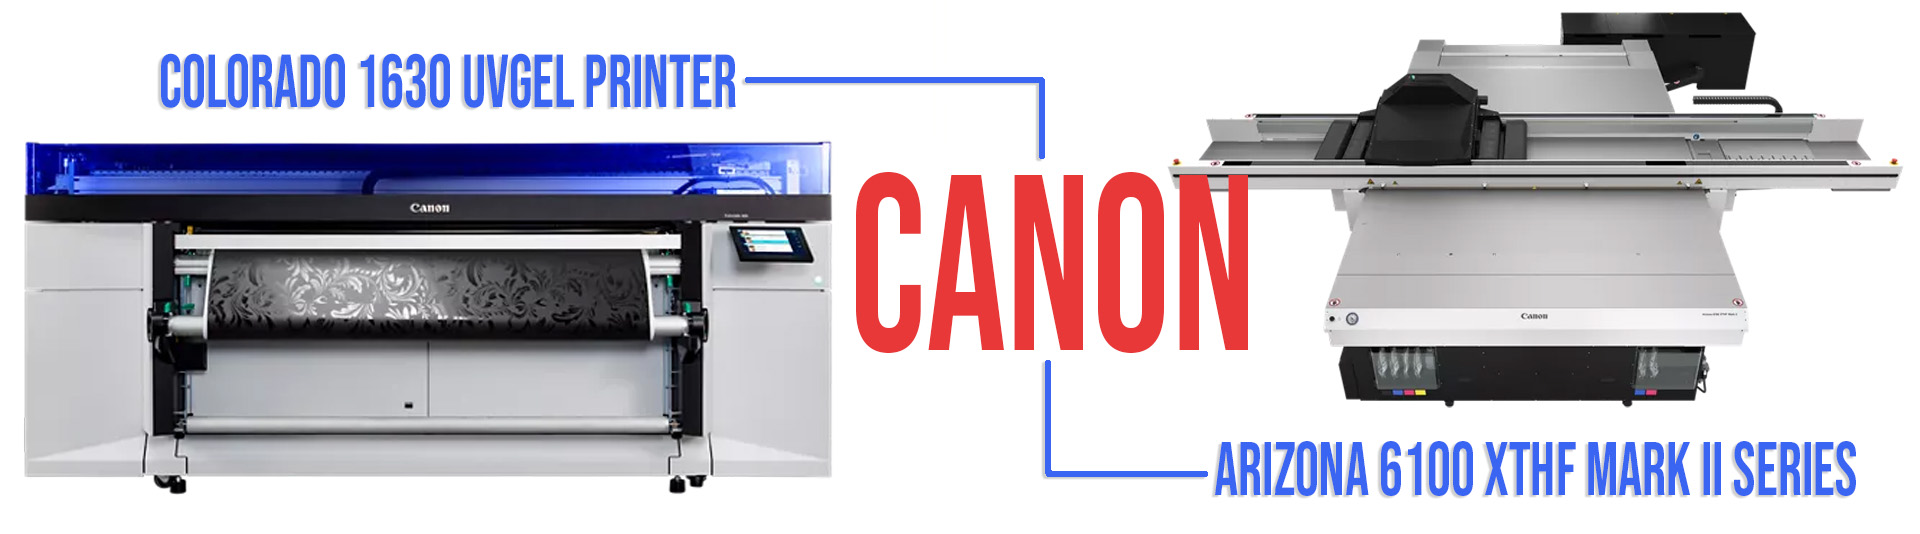 Canon Industrial Printers - Colorado and Arizona